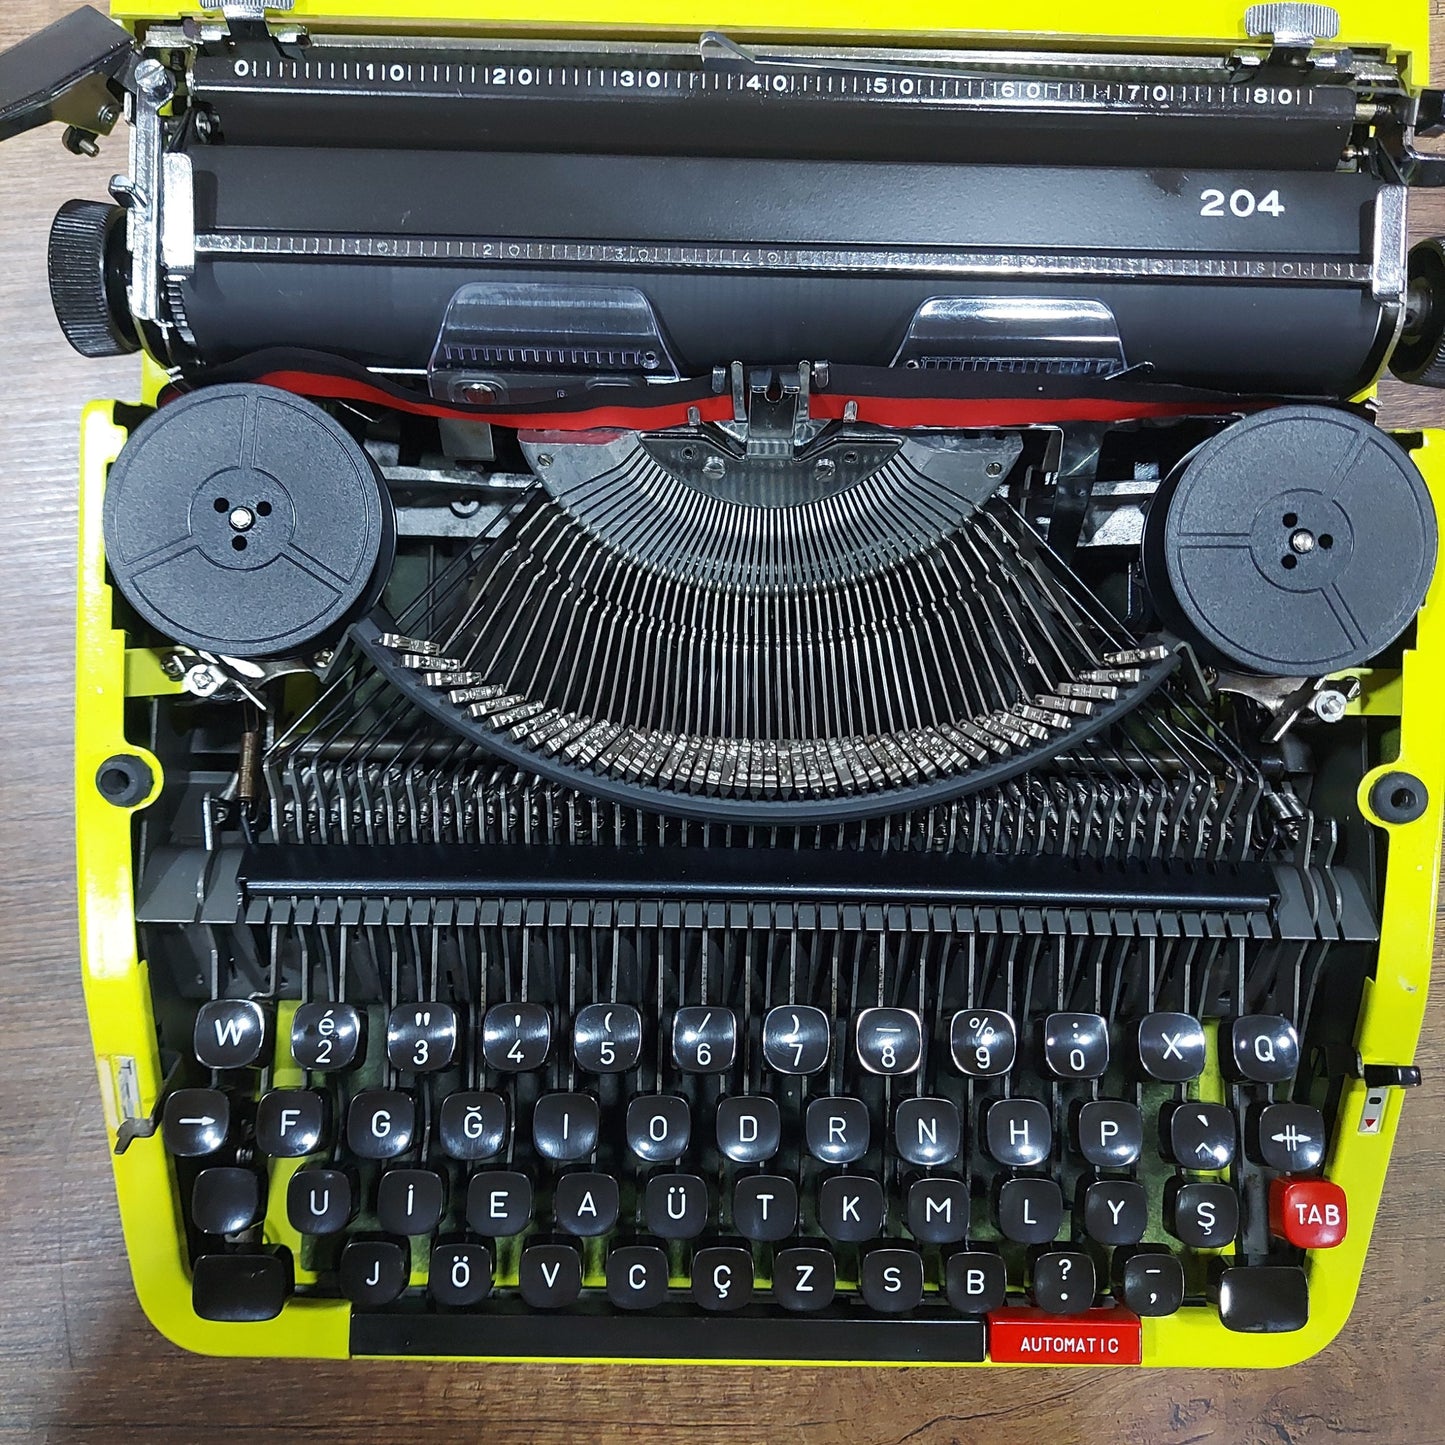 Royal 204 Brand Typewriter